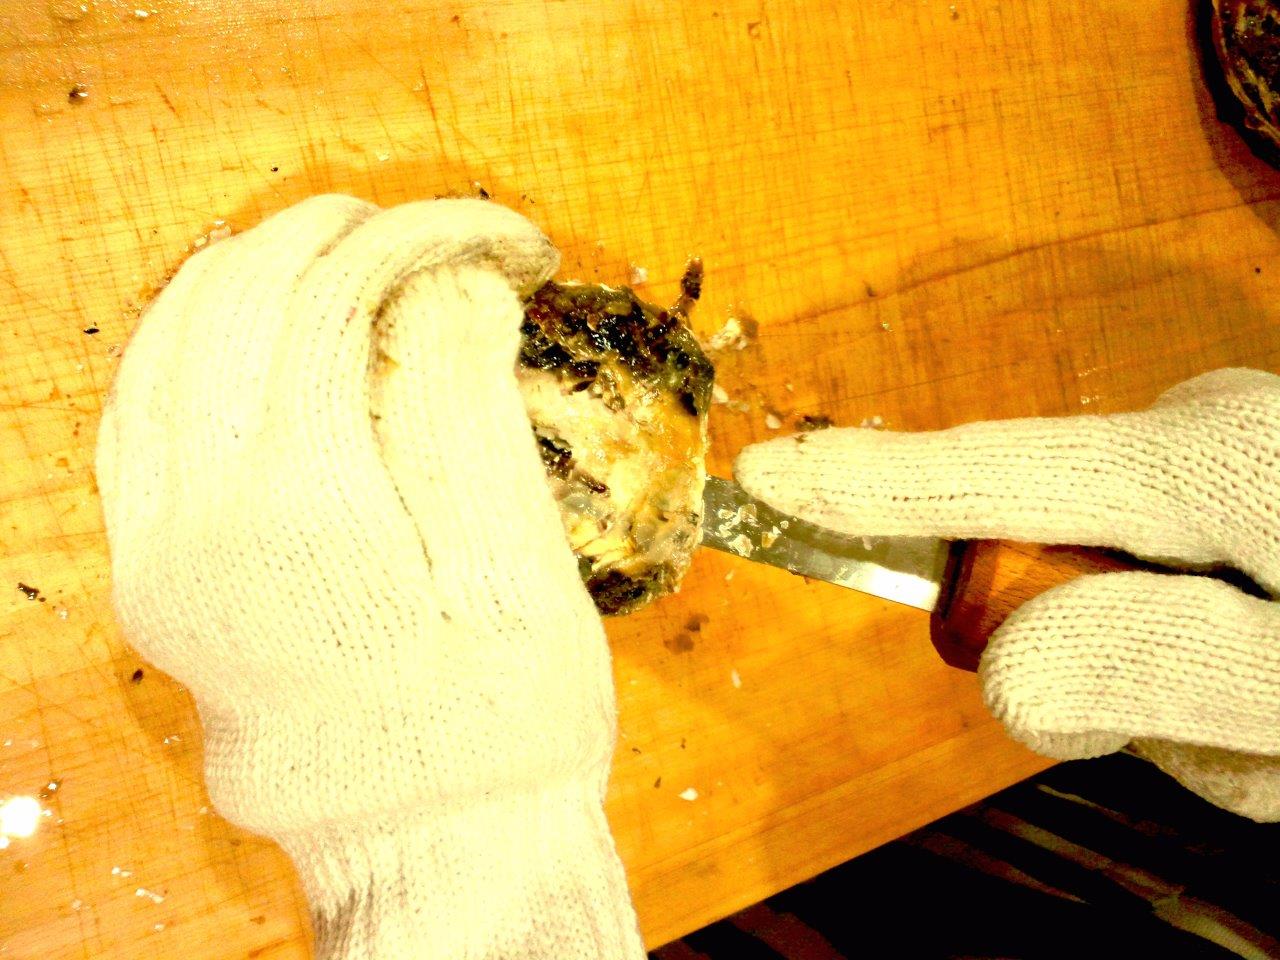 20121022_和食の基本10月「牡蠣をむく実習と松茸ごはん」ご参加の皆様へ_DSC_9413